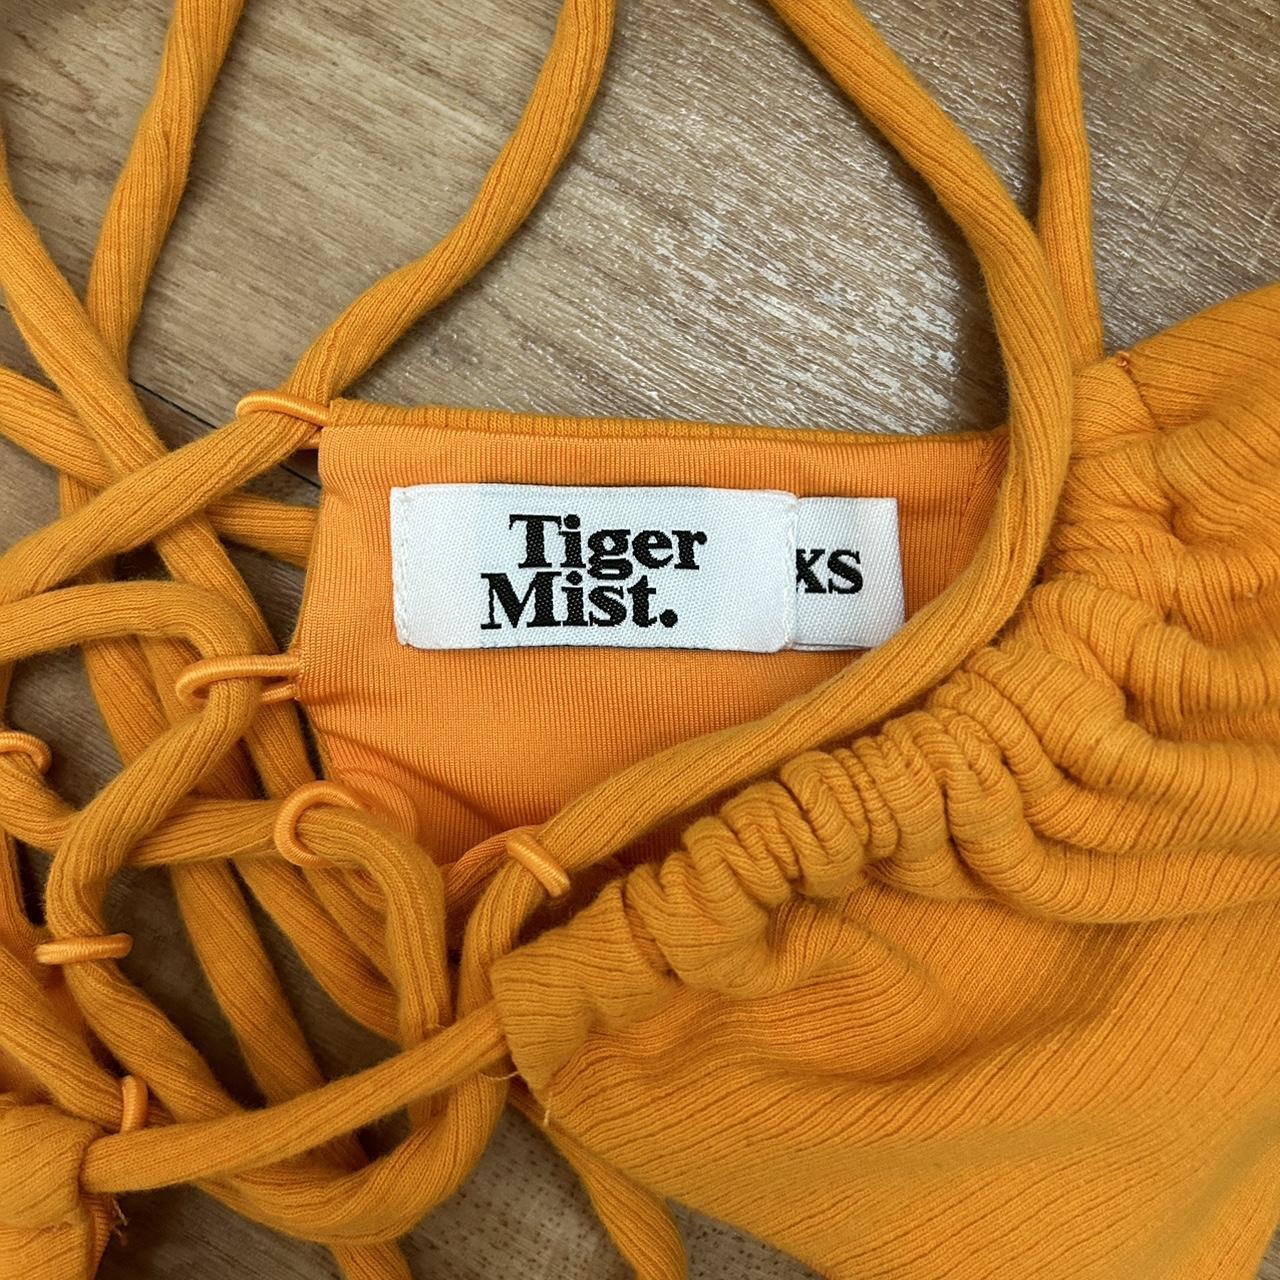 Tiger mist kellie set only worn once 🍹 originally... Depop